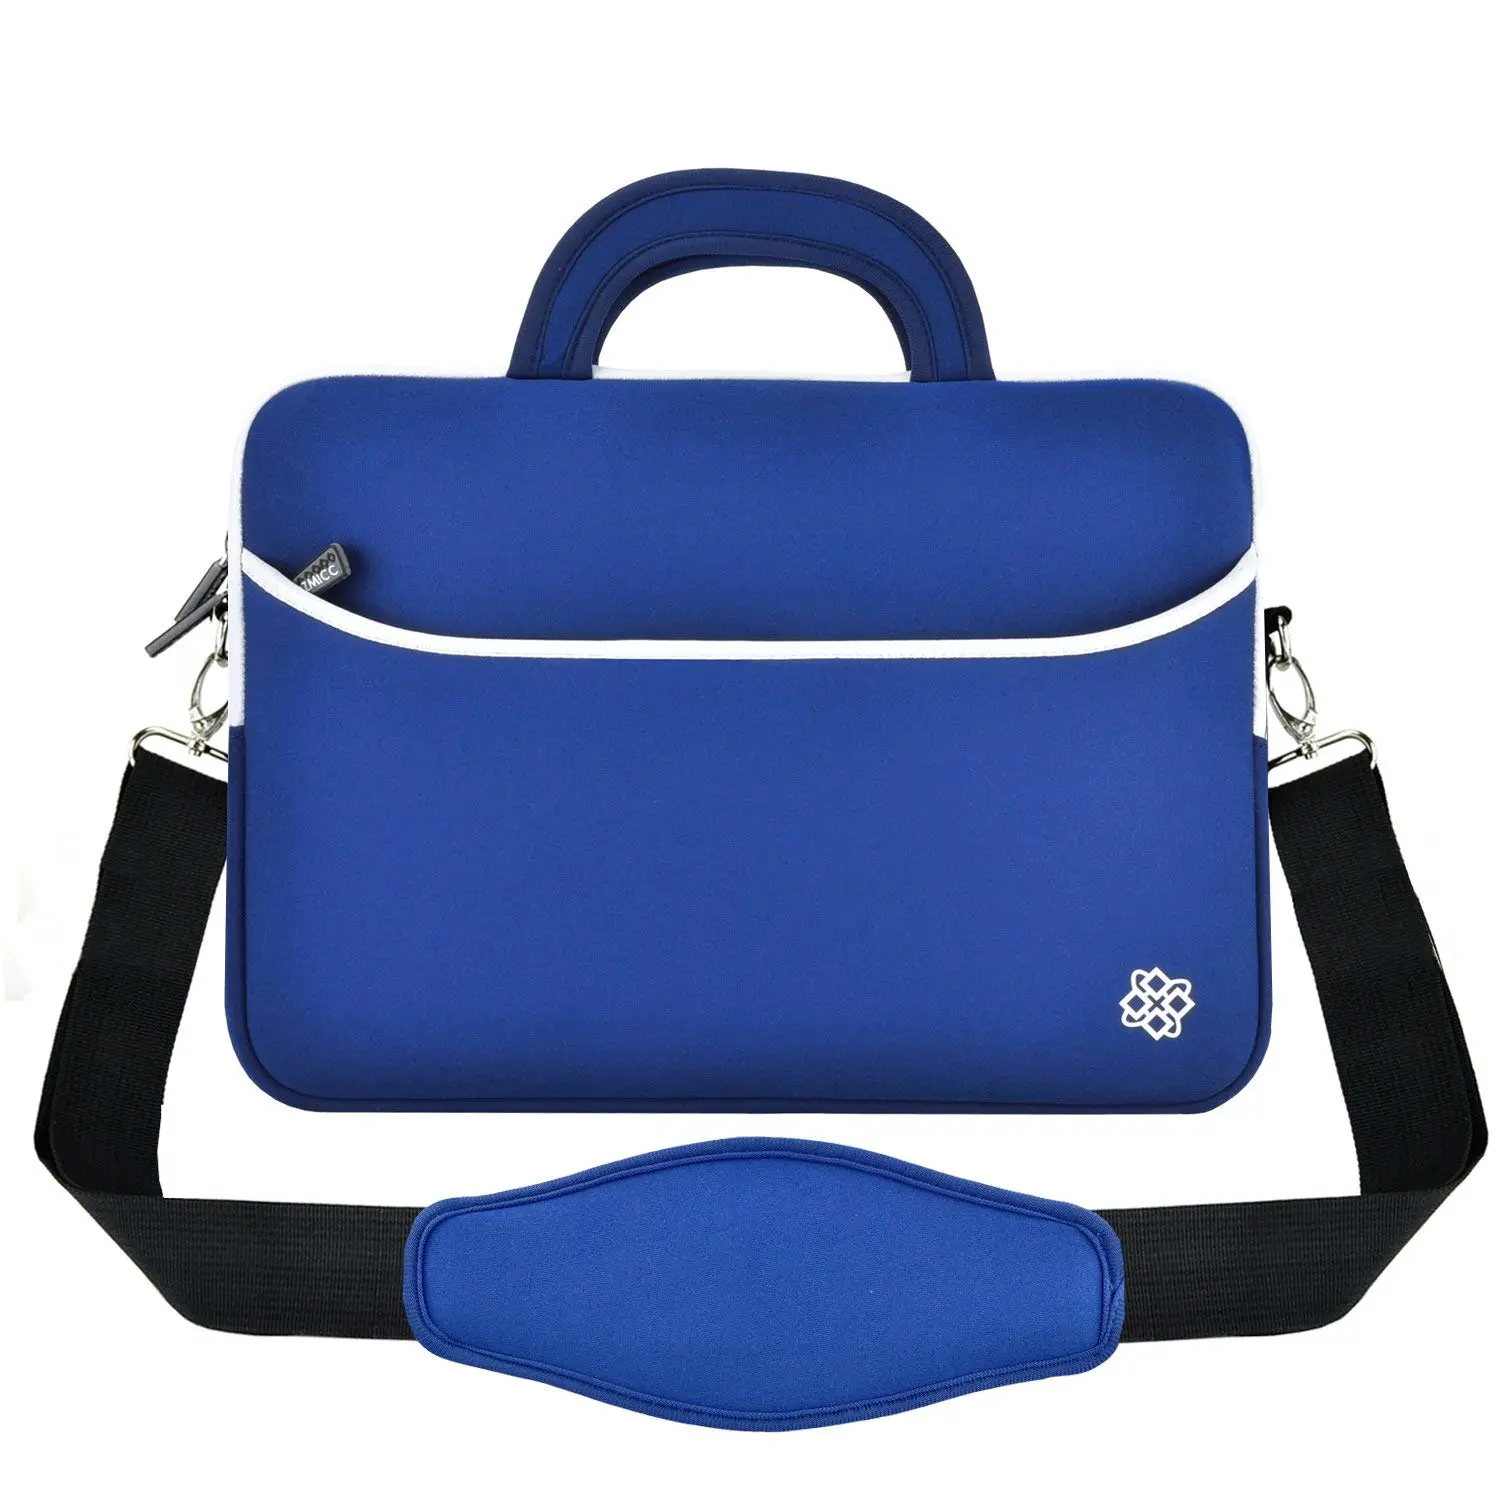 sleeve neoprene travel bag carrying case for sale